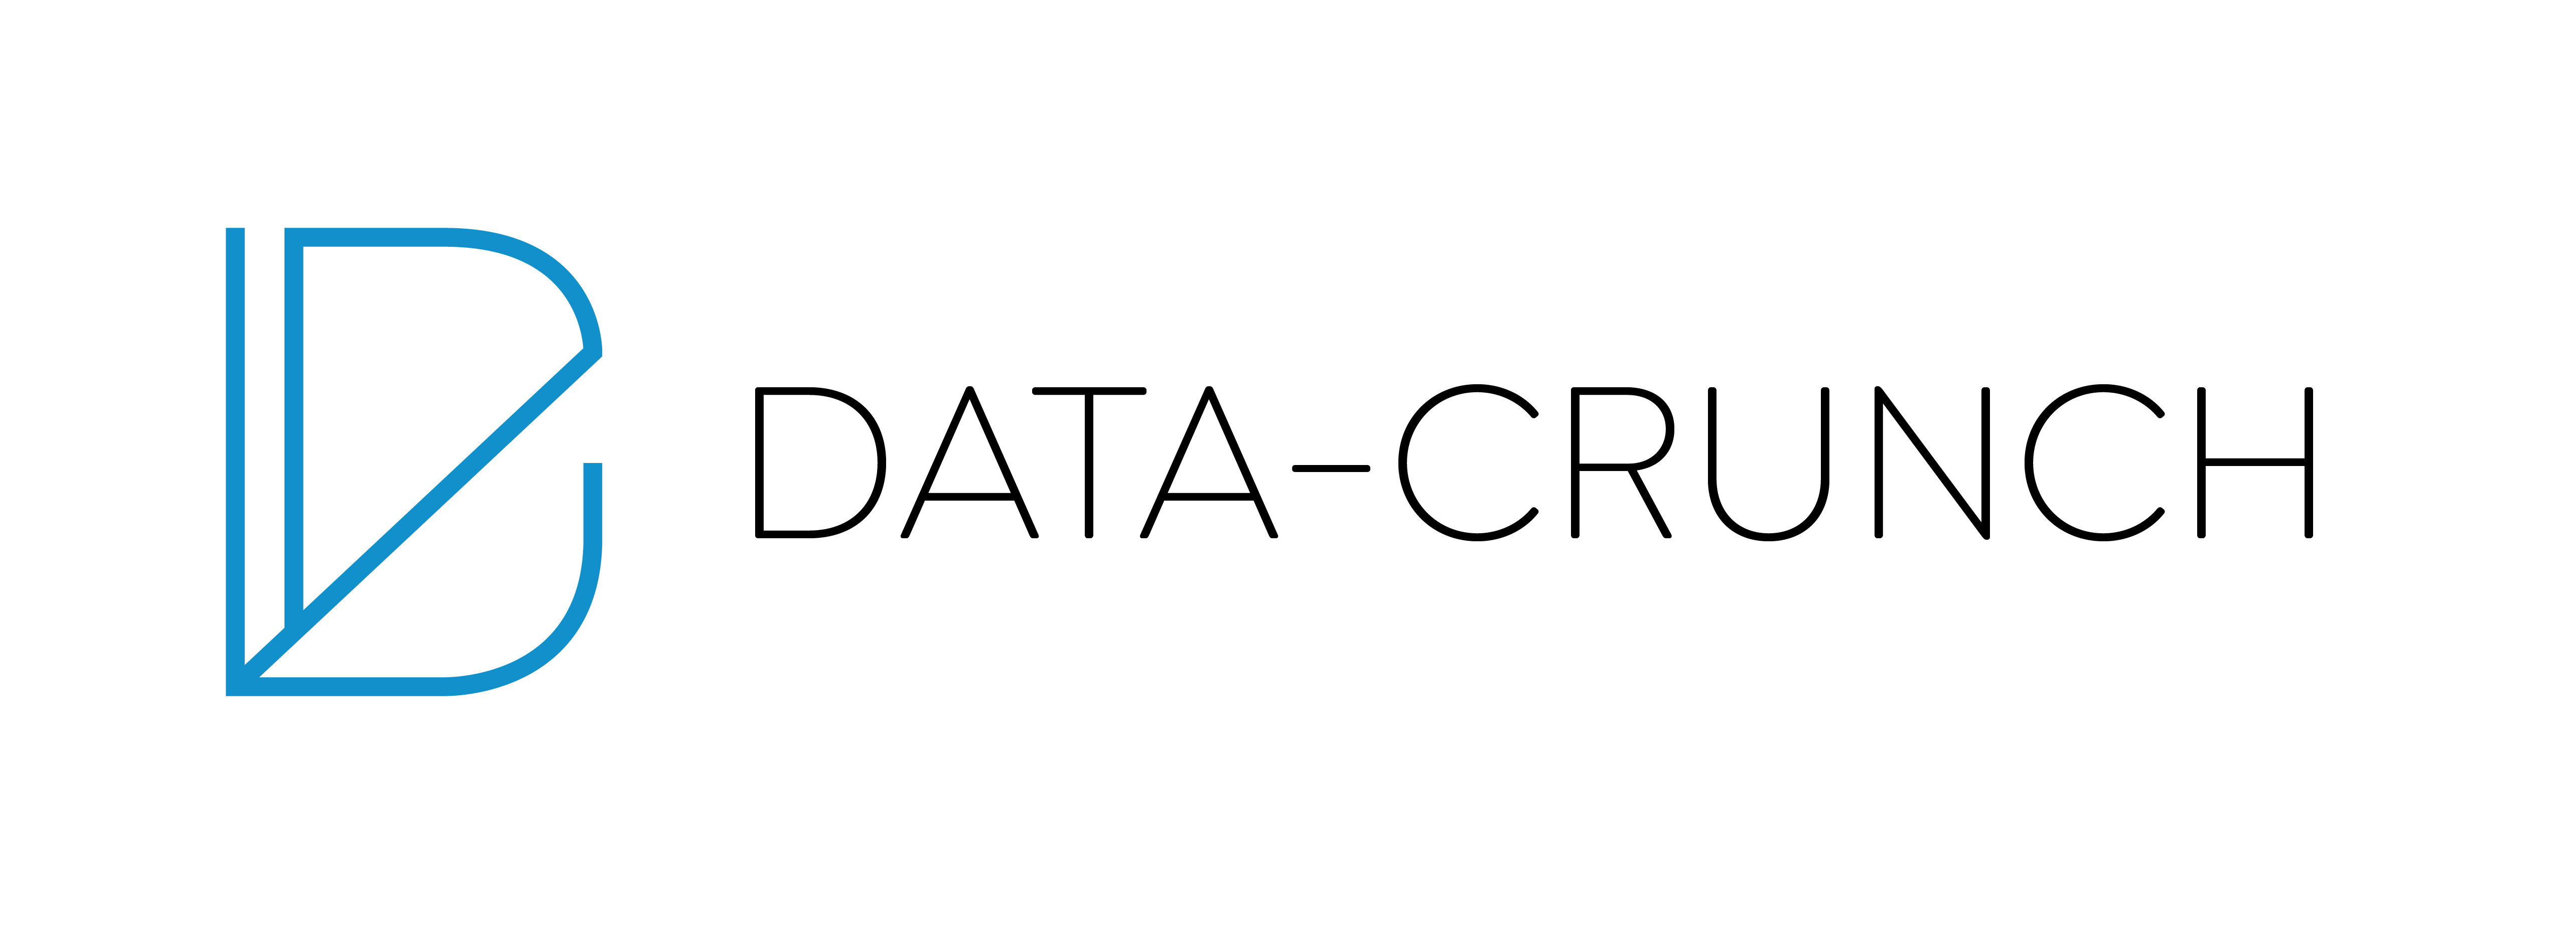 data crunch logo